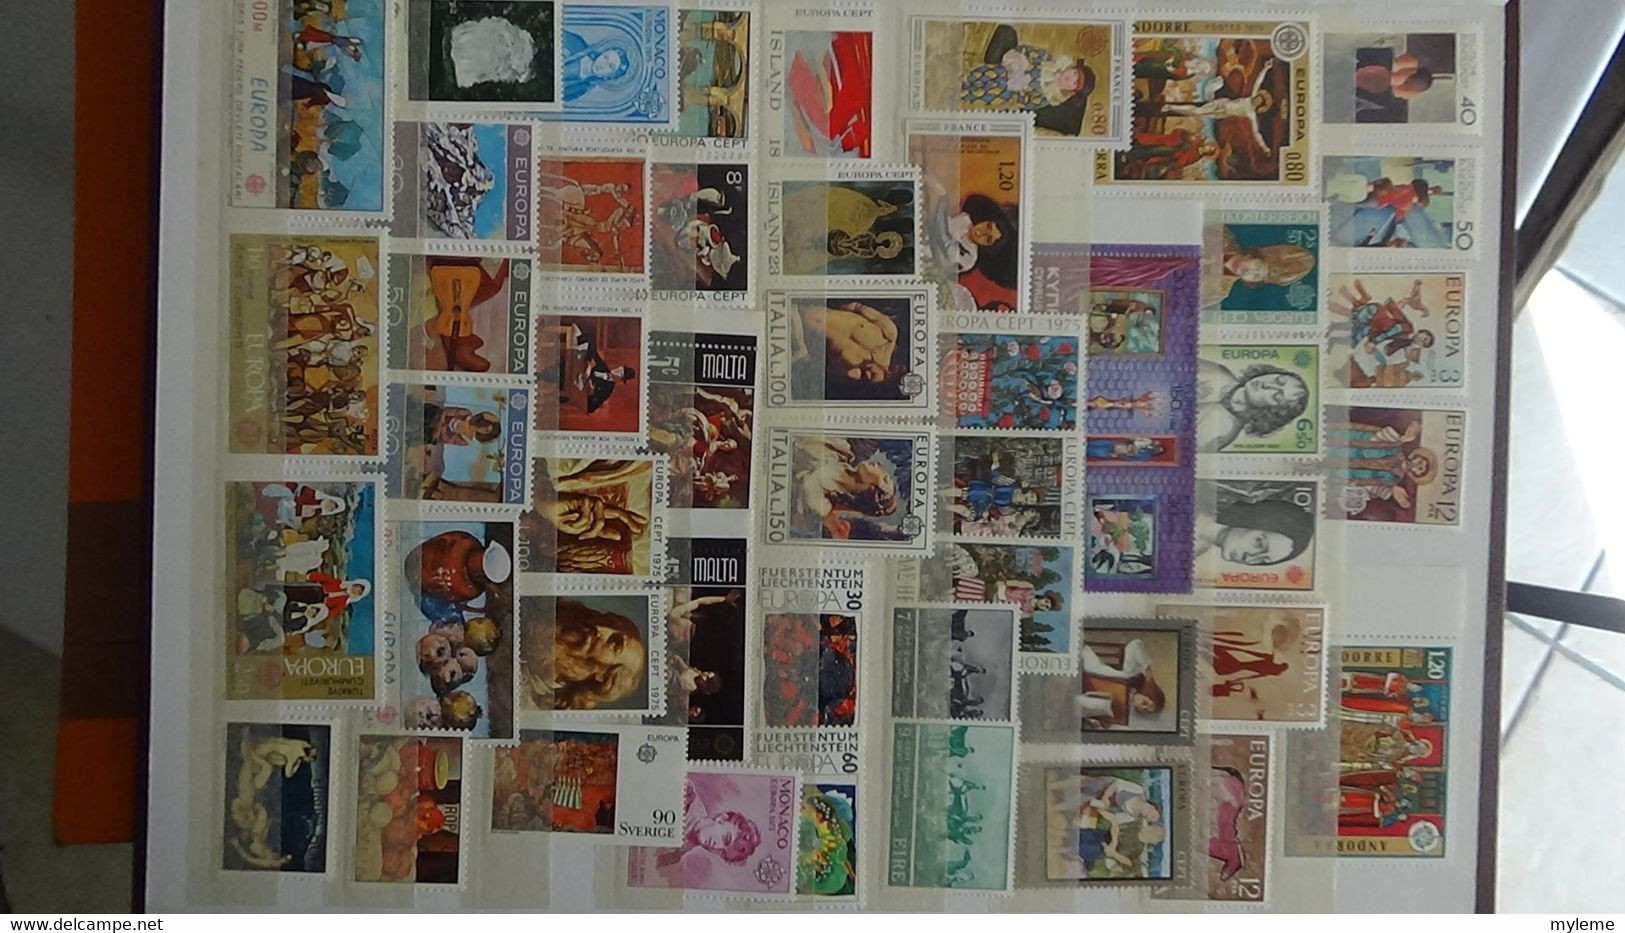 L19 Années EUROPA complètes ** de 1961 à 1972 et à compléter (manque peu de timbres) de 1973 à 1976.Côte 1774€.